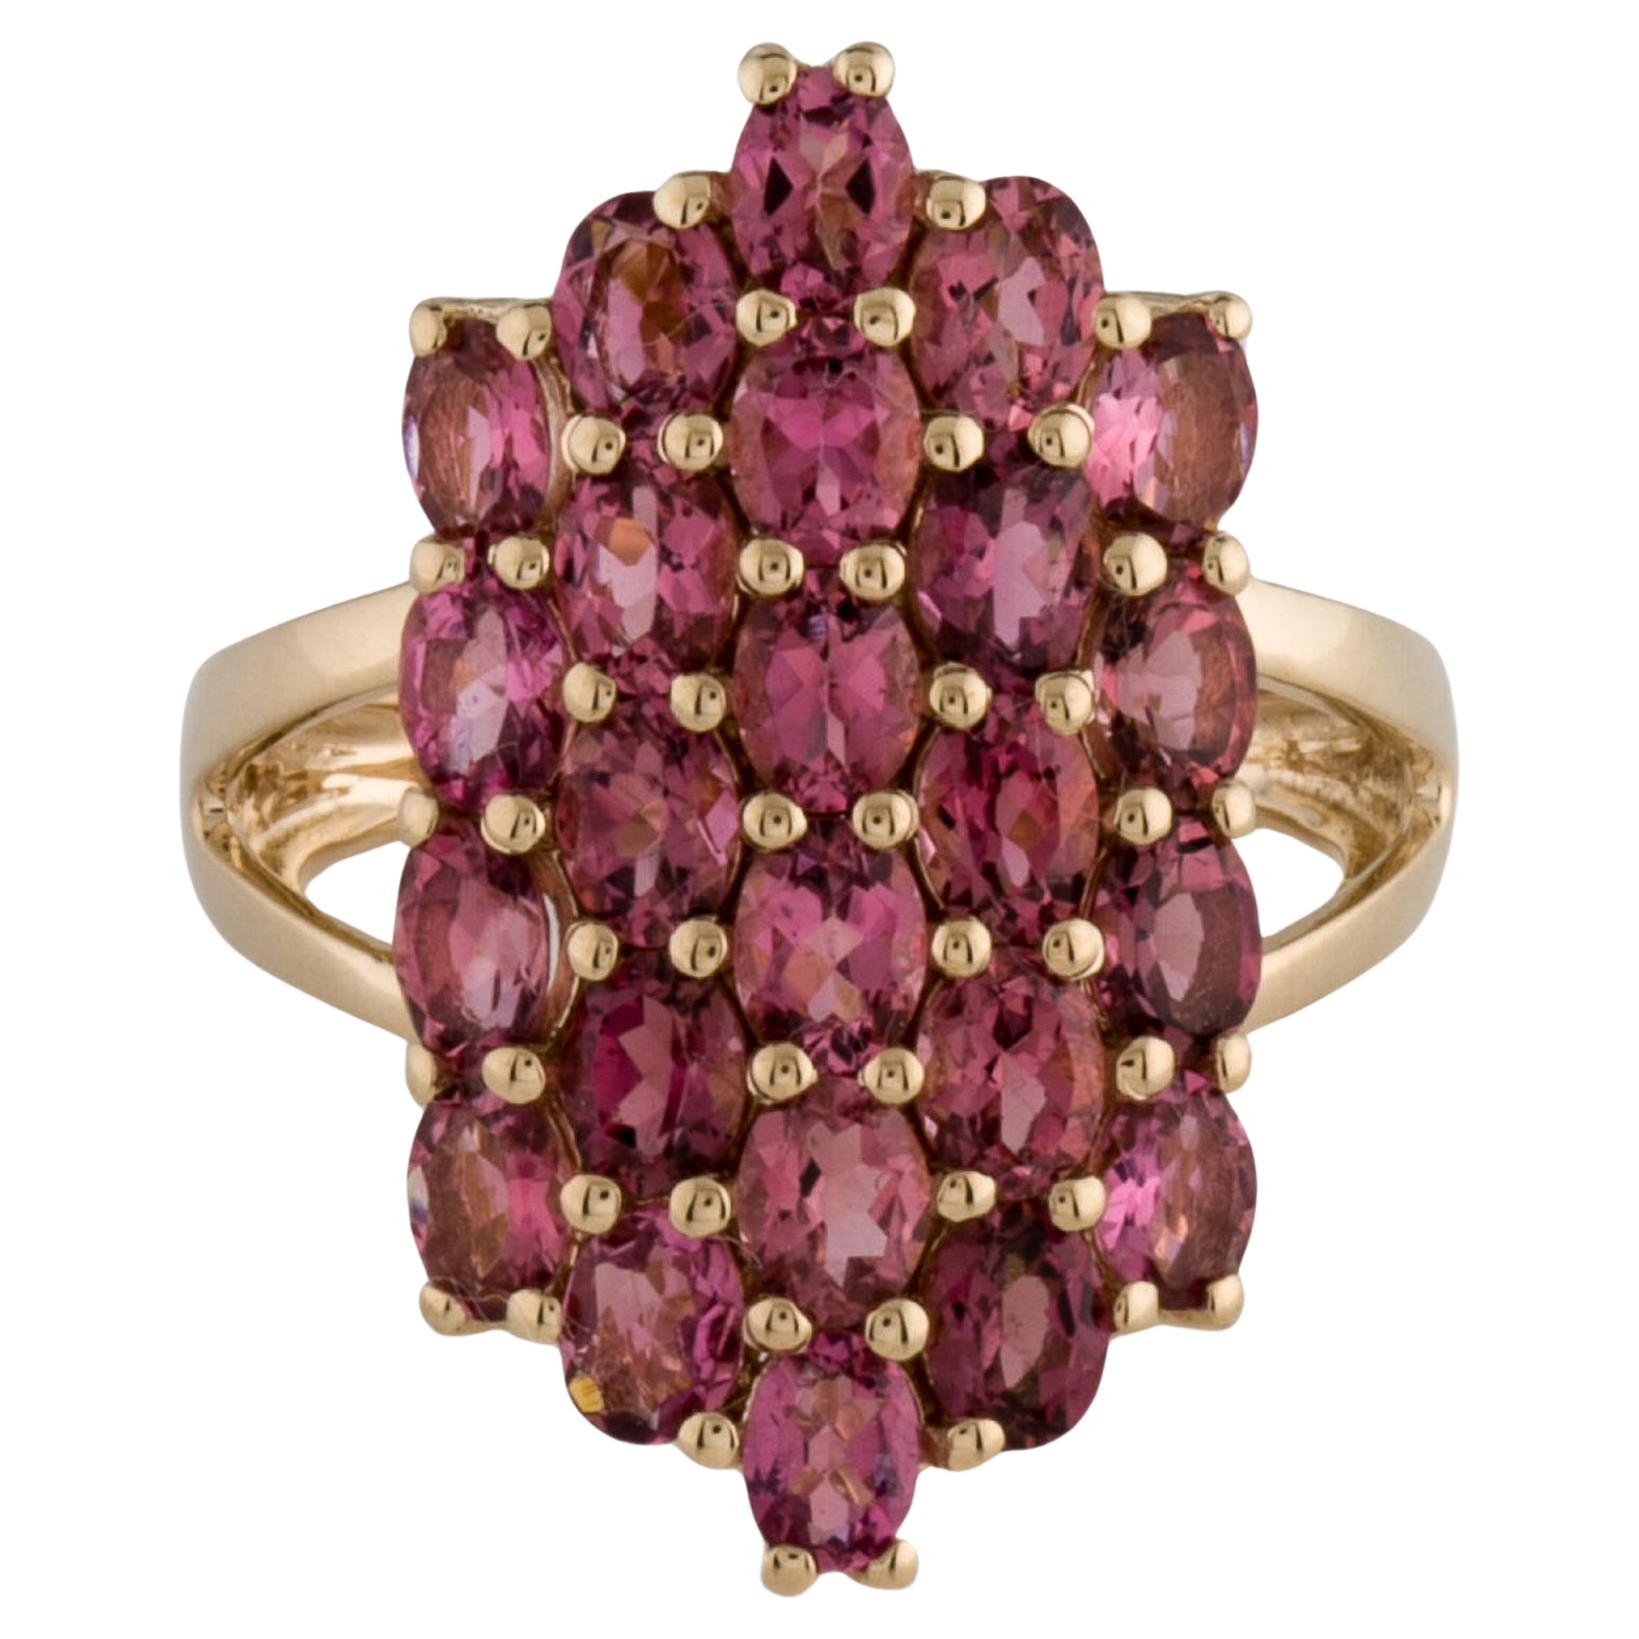 Elegant 14K Pink Tourmaline Cocktail Ring - Size 7  Vintage Gemstone Ring